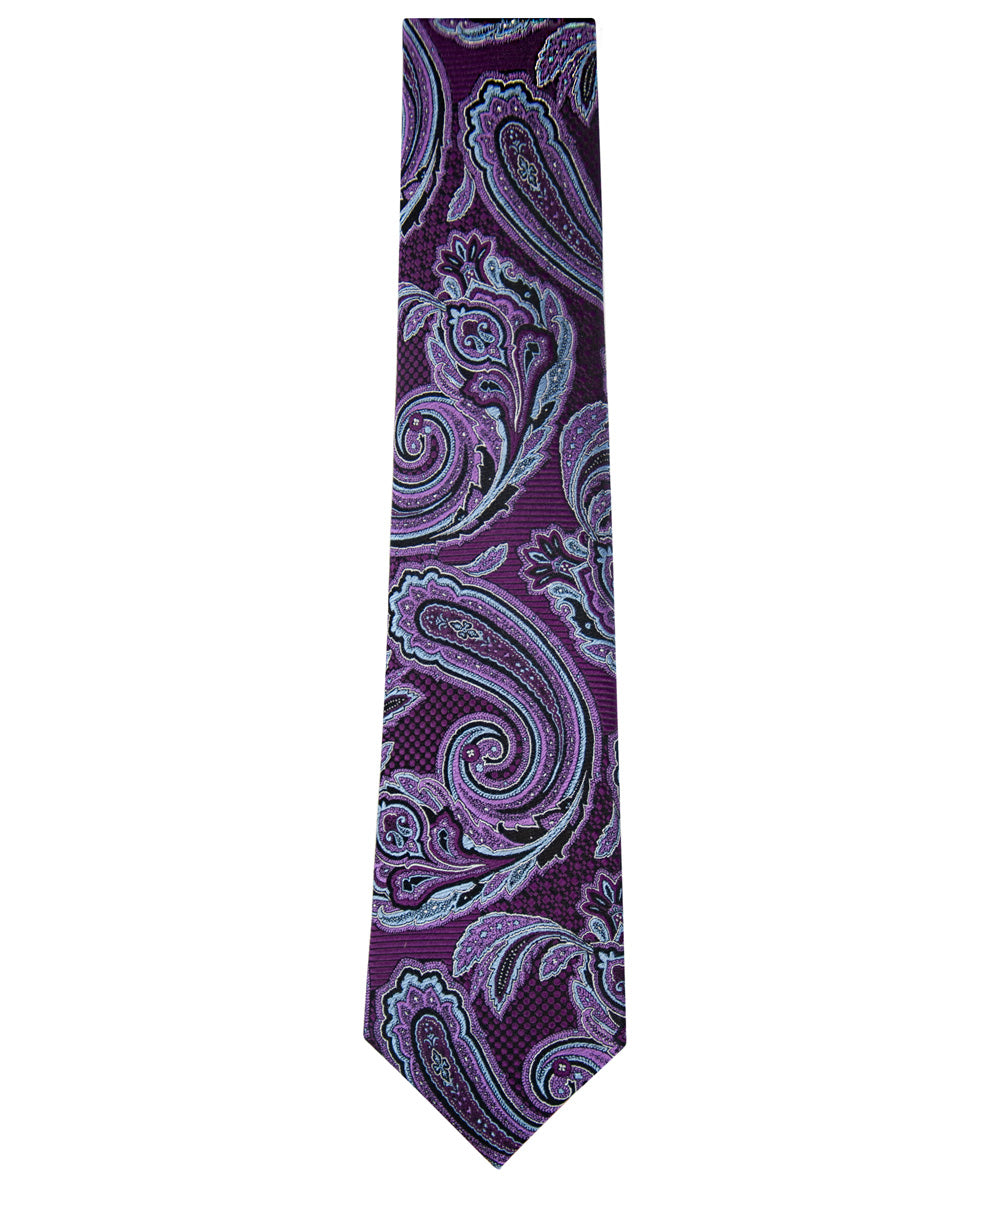 Purple and Sky Blue Paisley Silk Tie Long